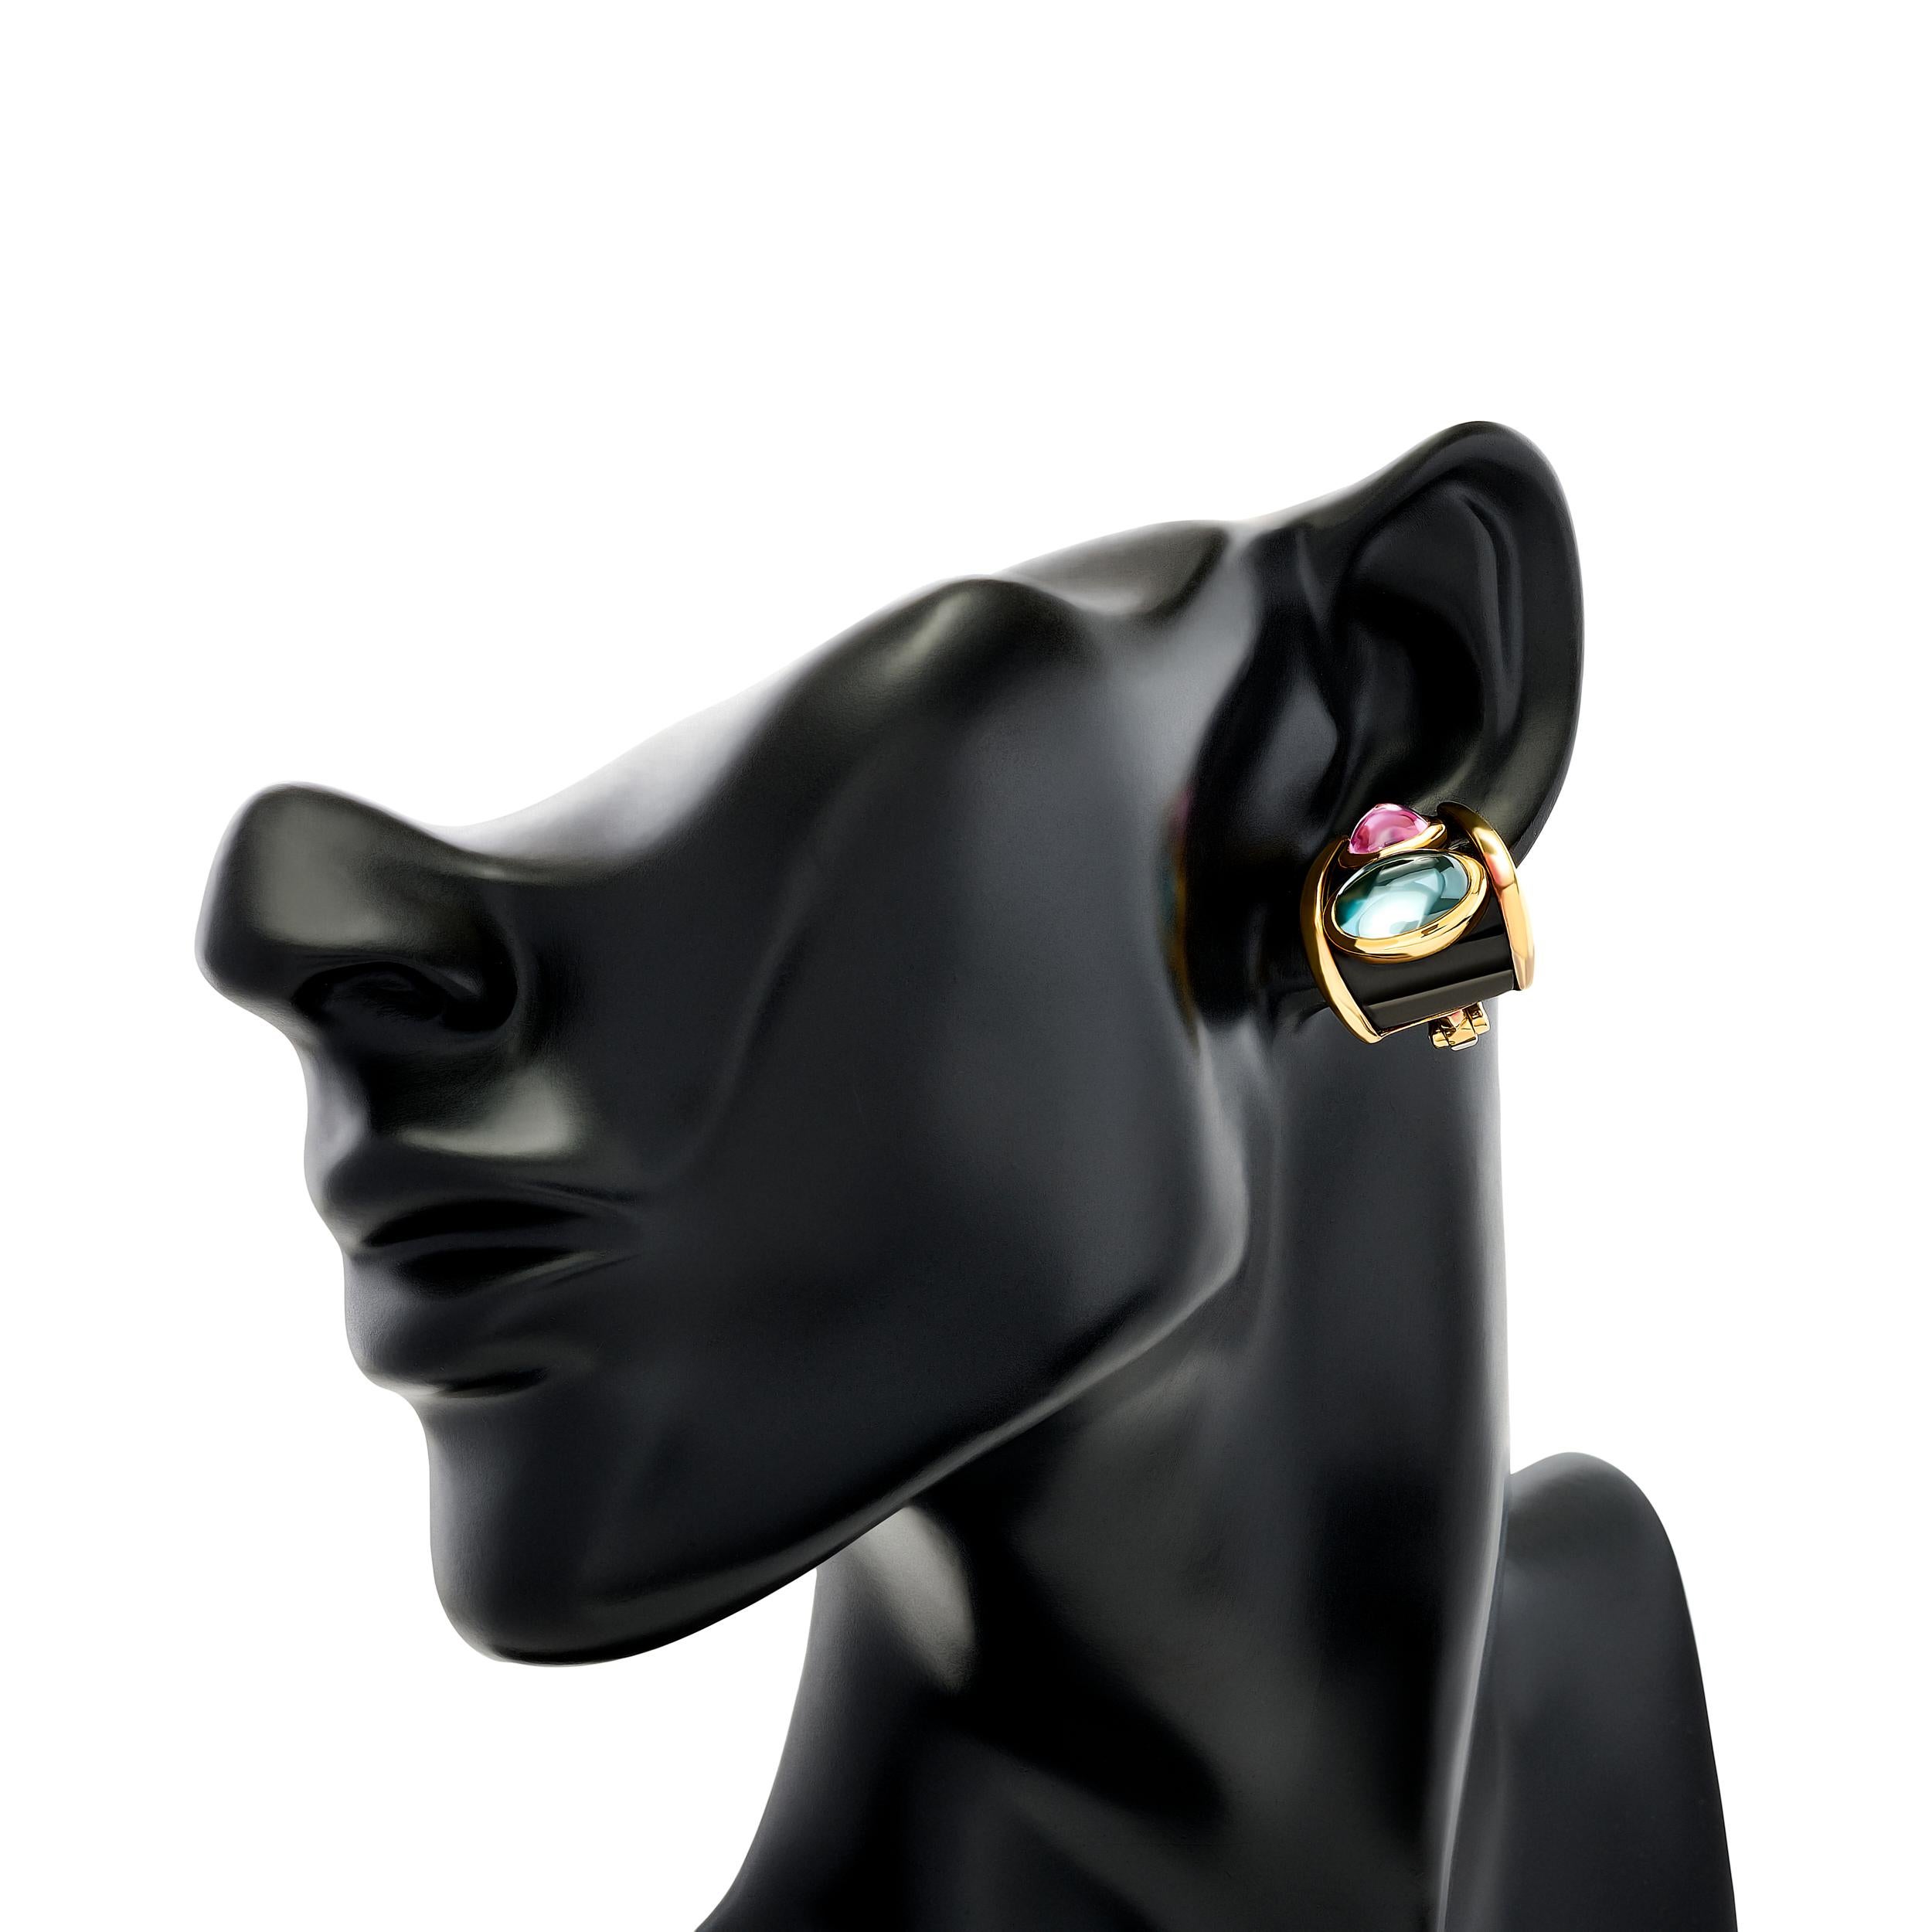 Les magnifiques boucles d'oreilles en émail noir à la topaze bleue et à l'améthyste de Marina B., où les pierres précieuses vibrantes et l'artisanat exquis convergent pour créer un chef-d'œuvre à porter.

Les deux pierres précieuses ovales en topaze